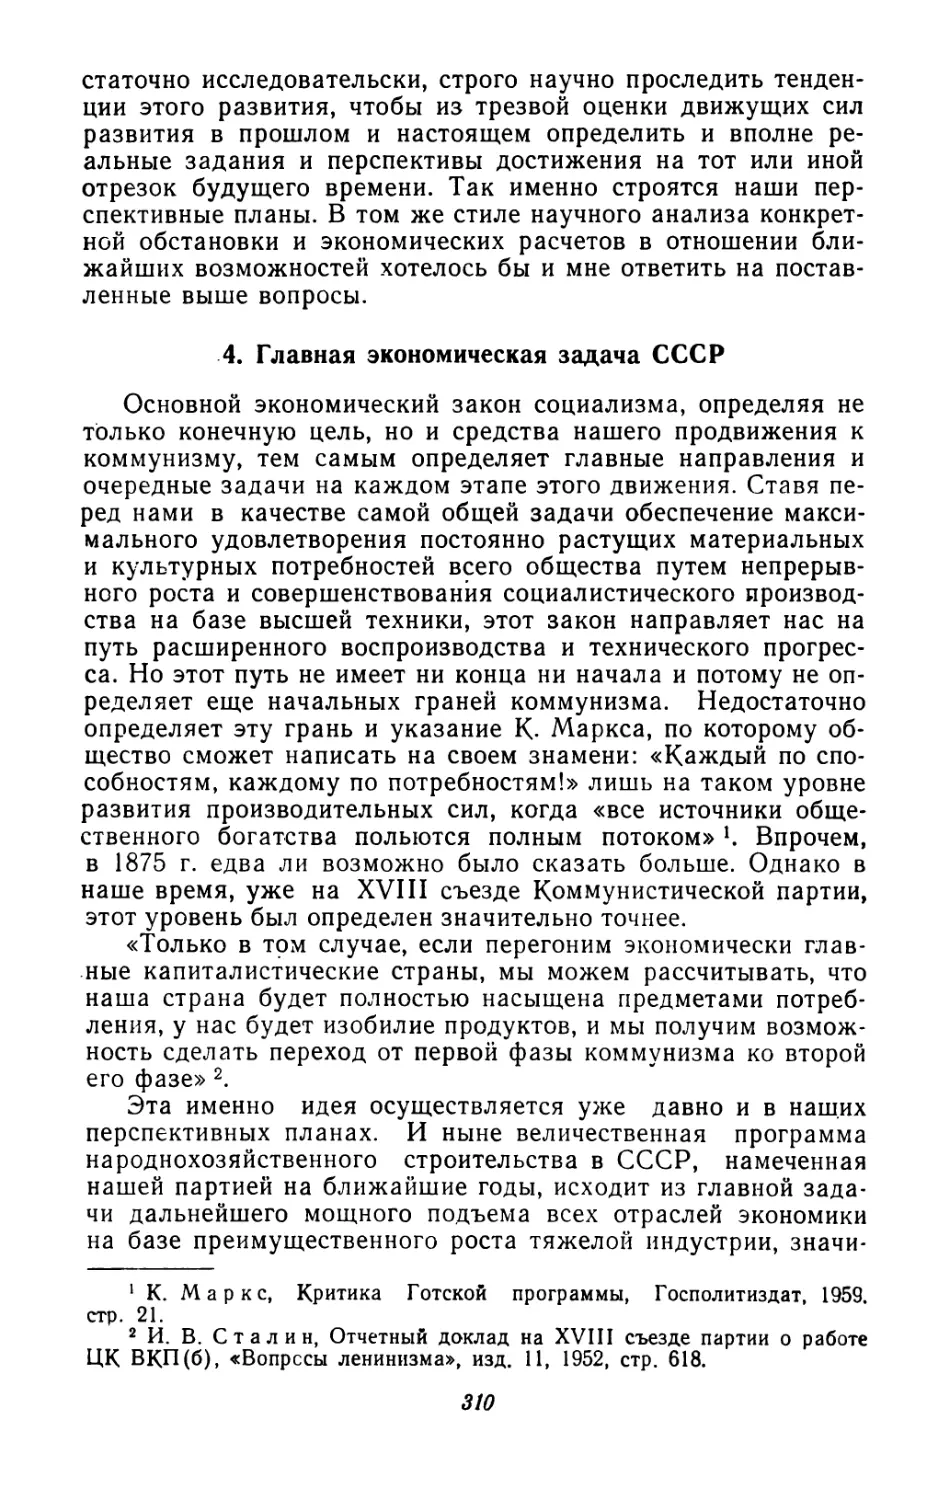 4. Главная экономическая задача СССР